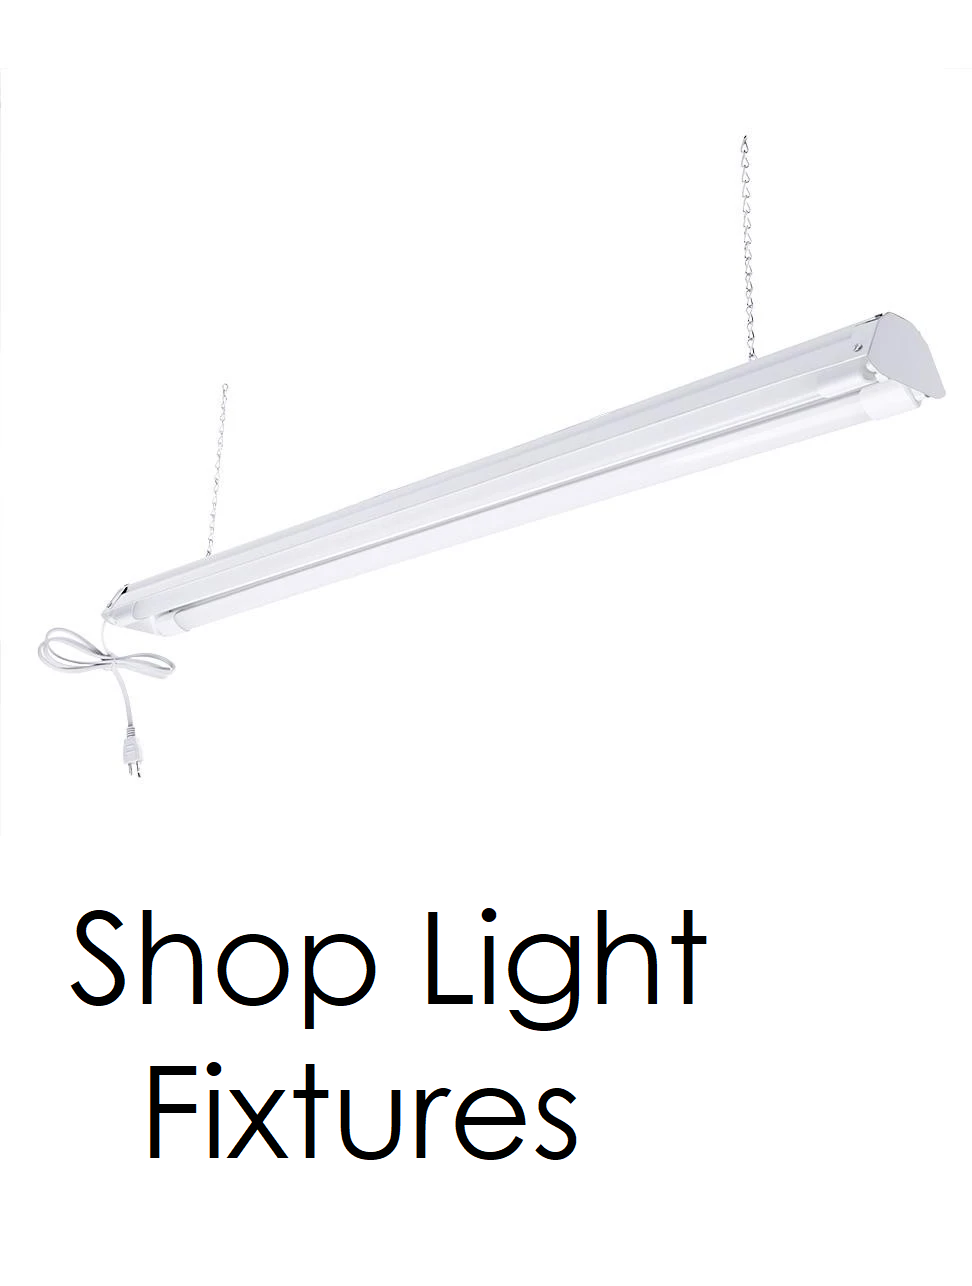 Shop Lights & Fixtures